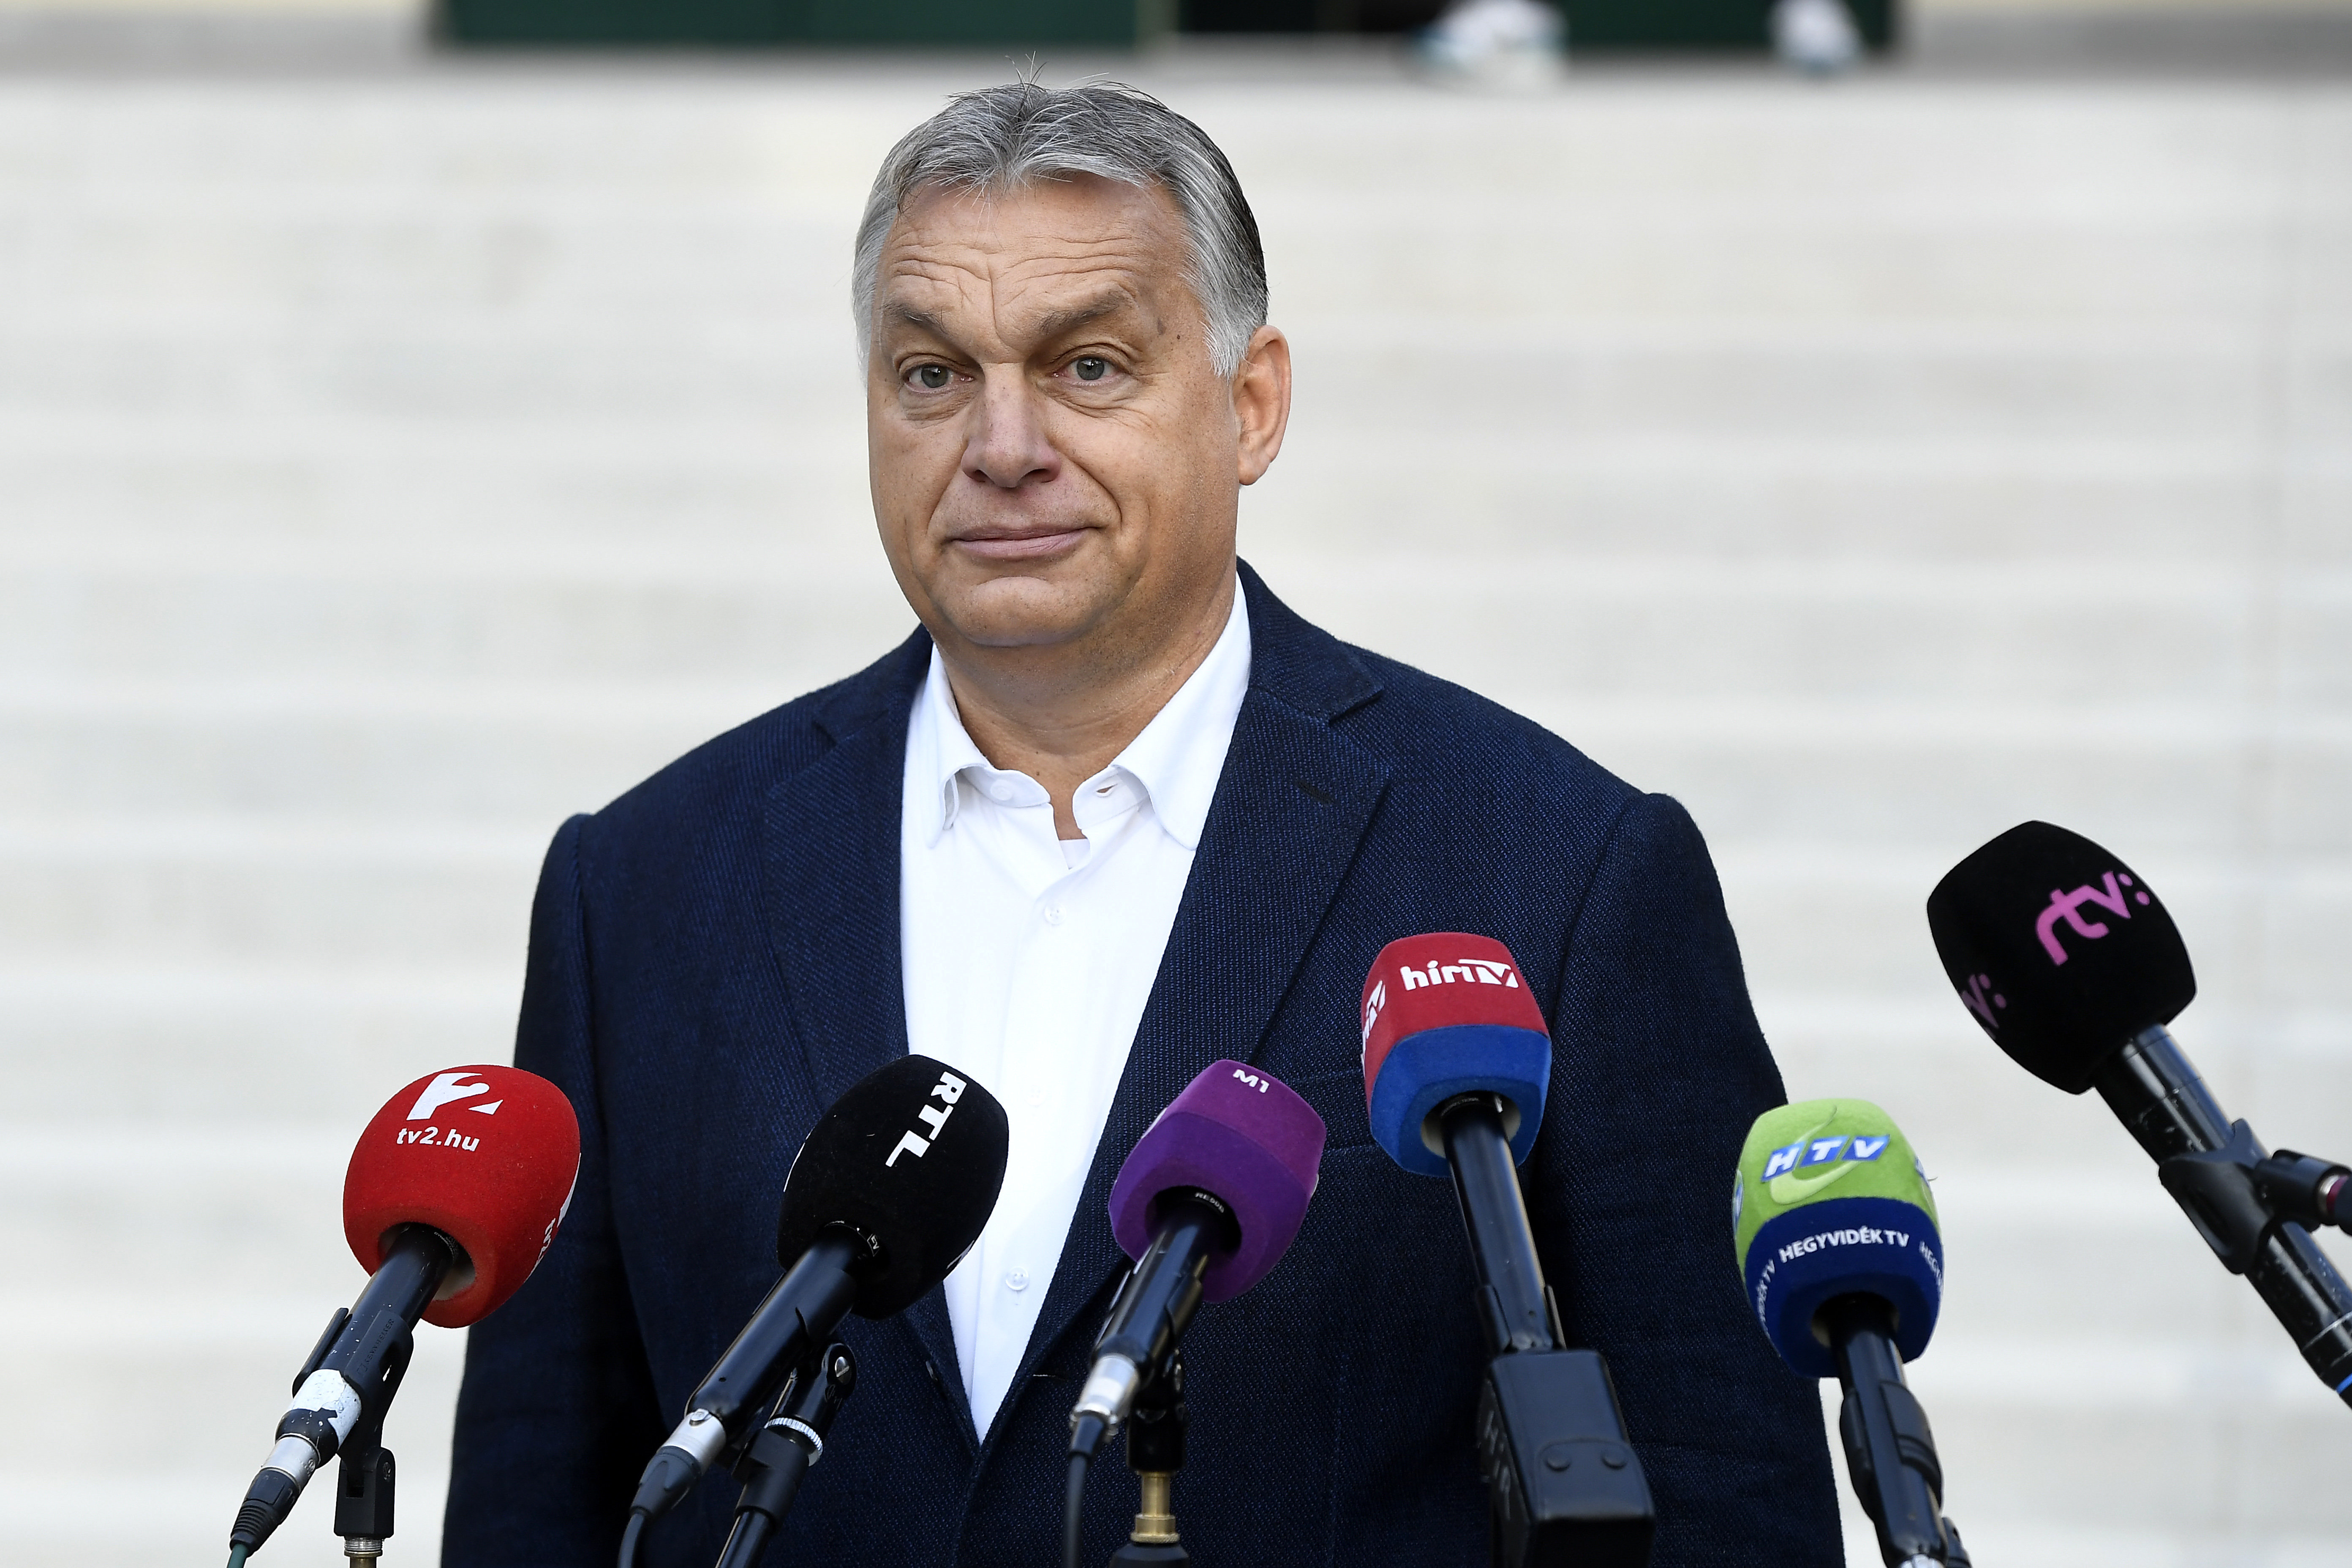 Spekulationen über ausländische Einmischung in die ungarischen Wahlen